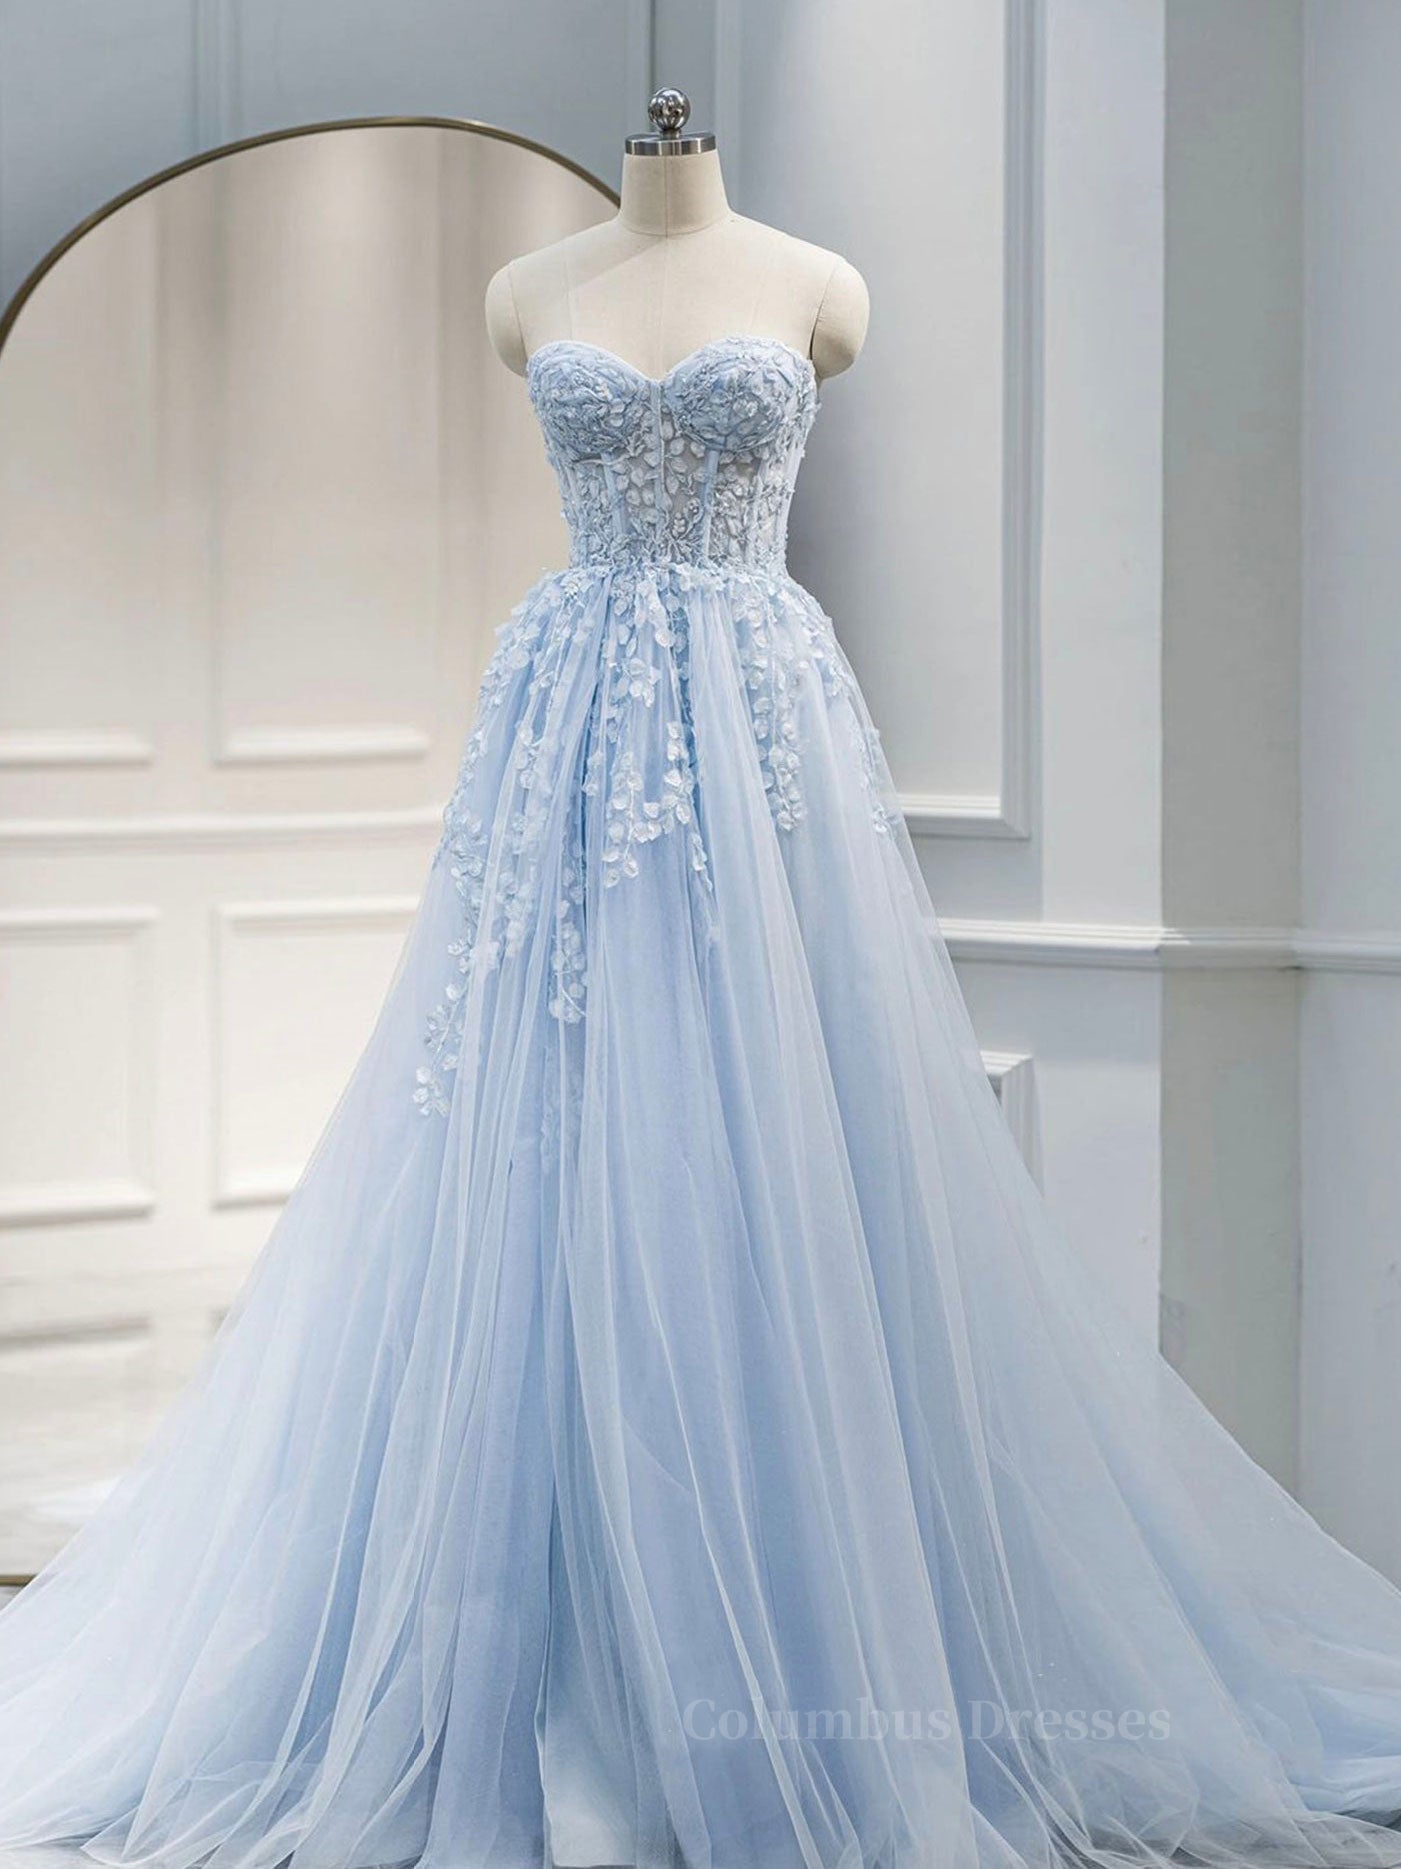 Formal Dress Boutiques Near Me, Blue A line tulle lace long prom dress blue lace formal dress